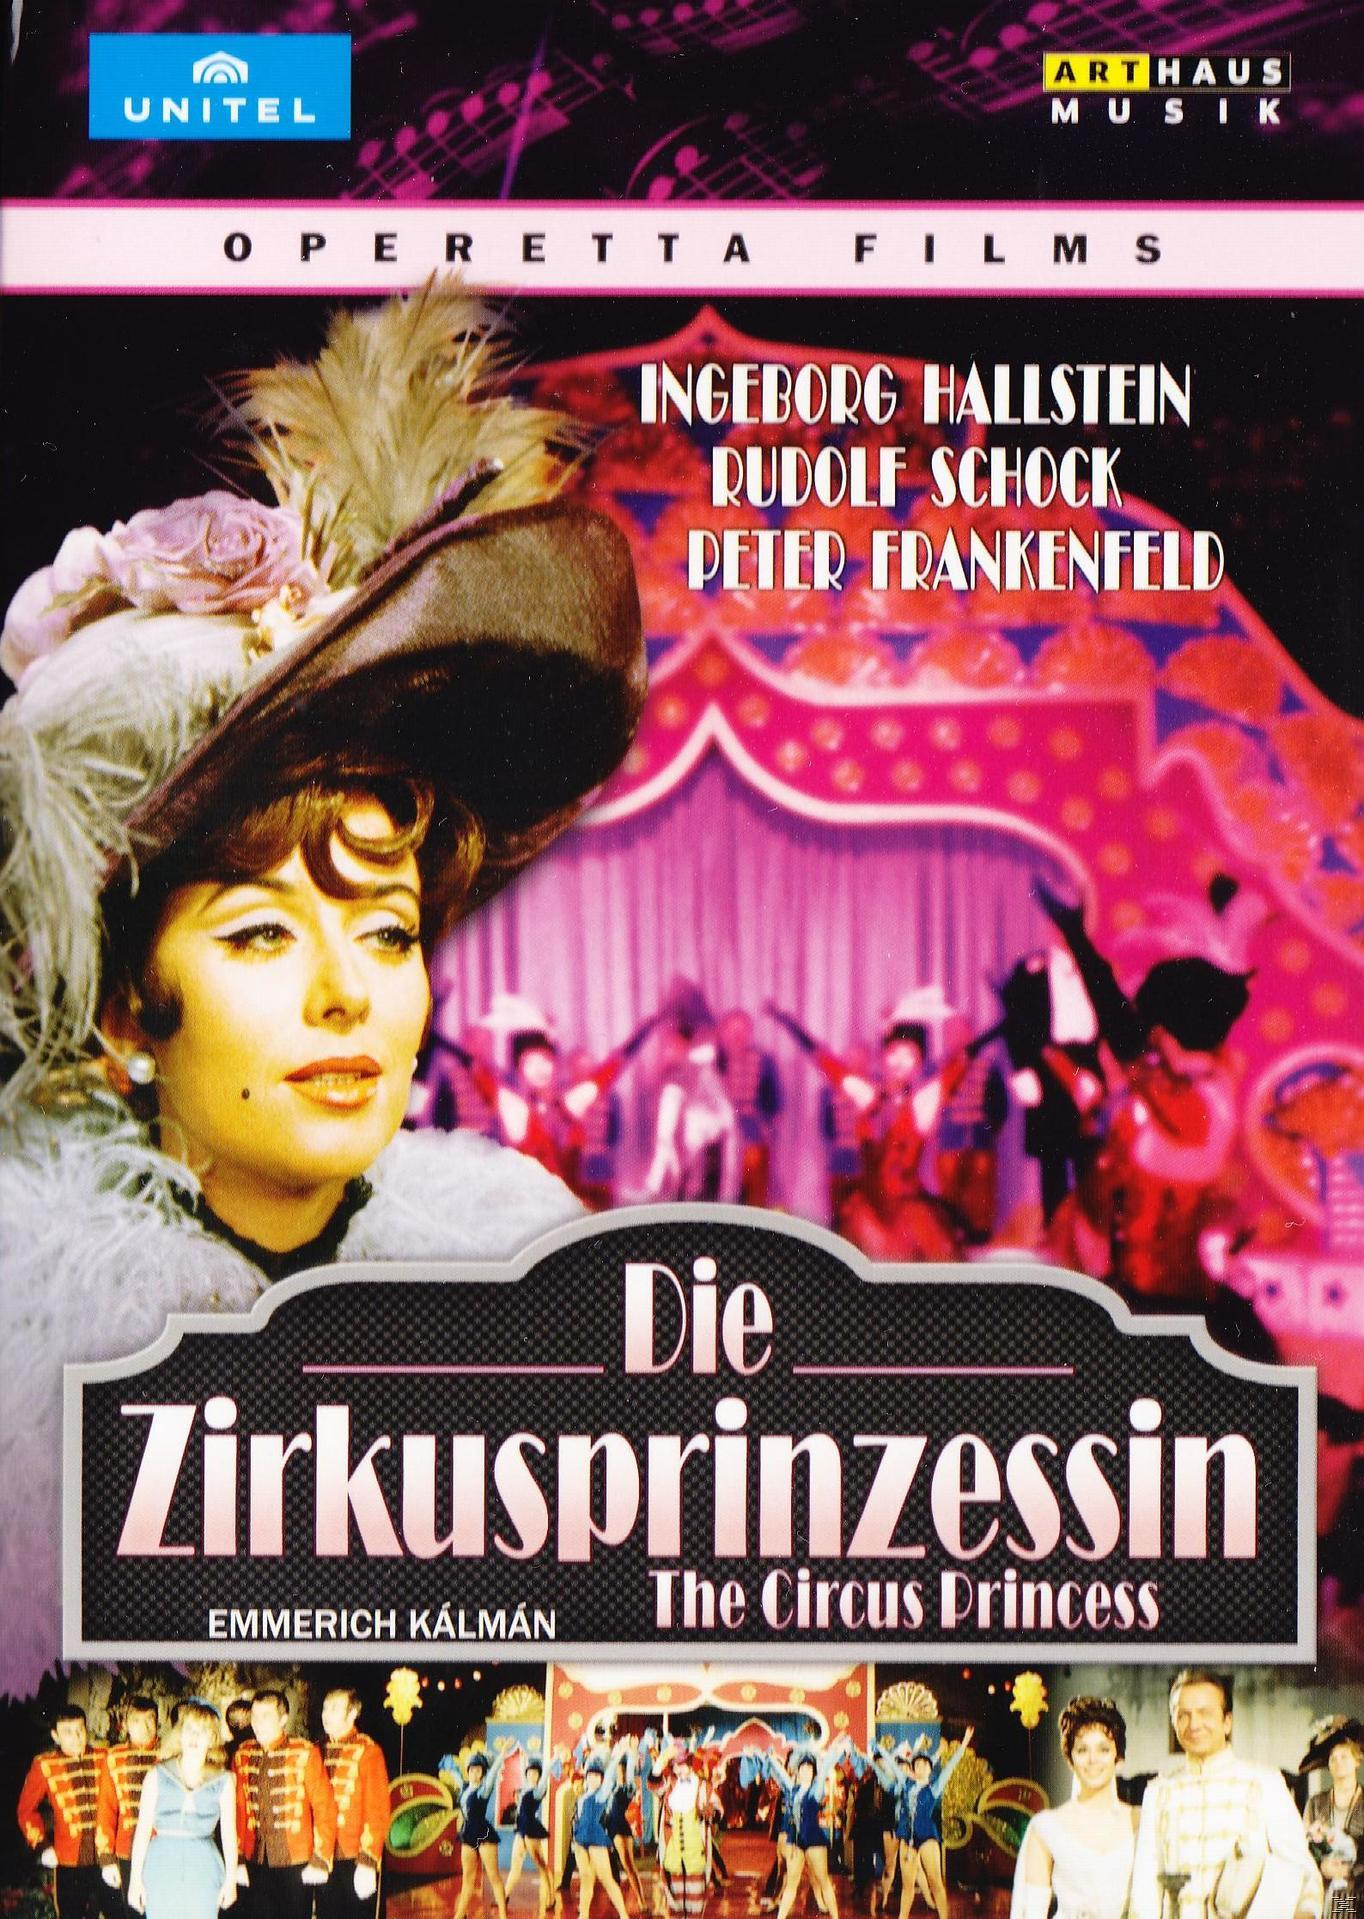 Hallenstein, Die (DVD) - Zirkusprinzessin Ingeborg Rudolf - Schock